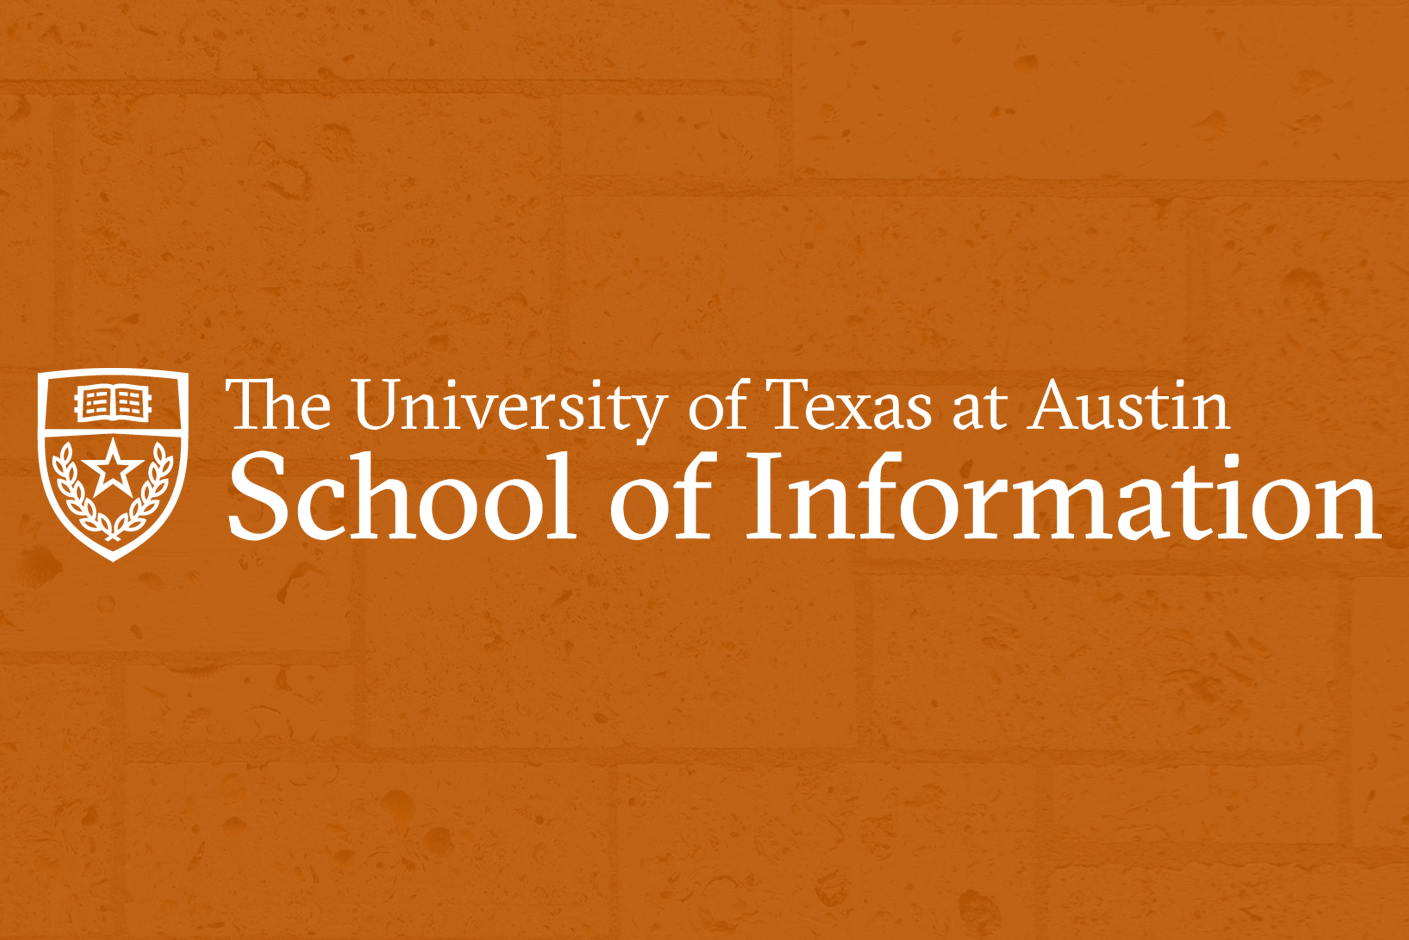 BIPOC Alumni Scholarship Fund Established at UT Austin iSchool